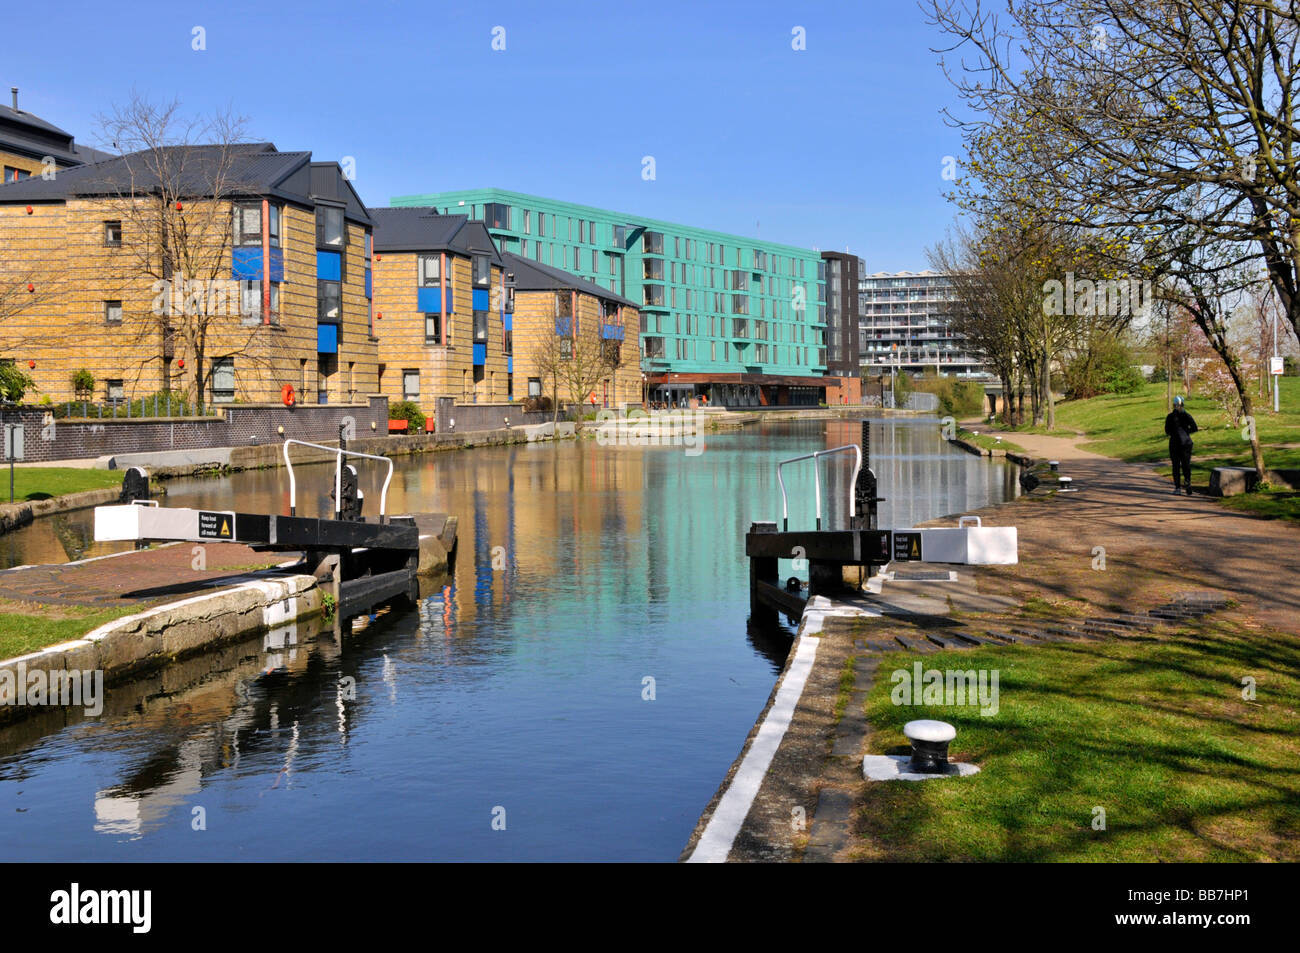 Réflexion hivernale dans Regents Canal à l'extrémité du mile pistes de halage avec Queen Mary University of London conception moderne de bâtiment bleu ciel ensoleillé Angleterre Royaume-Uni Banque D'Images